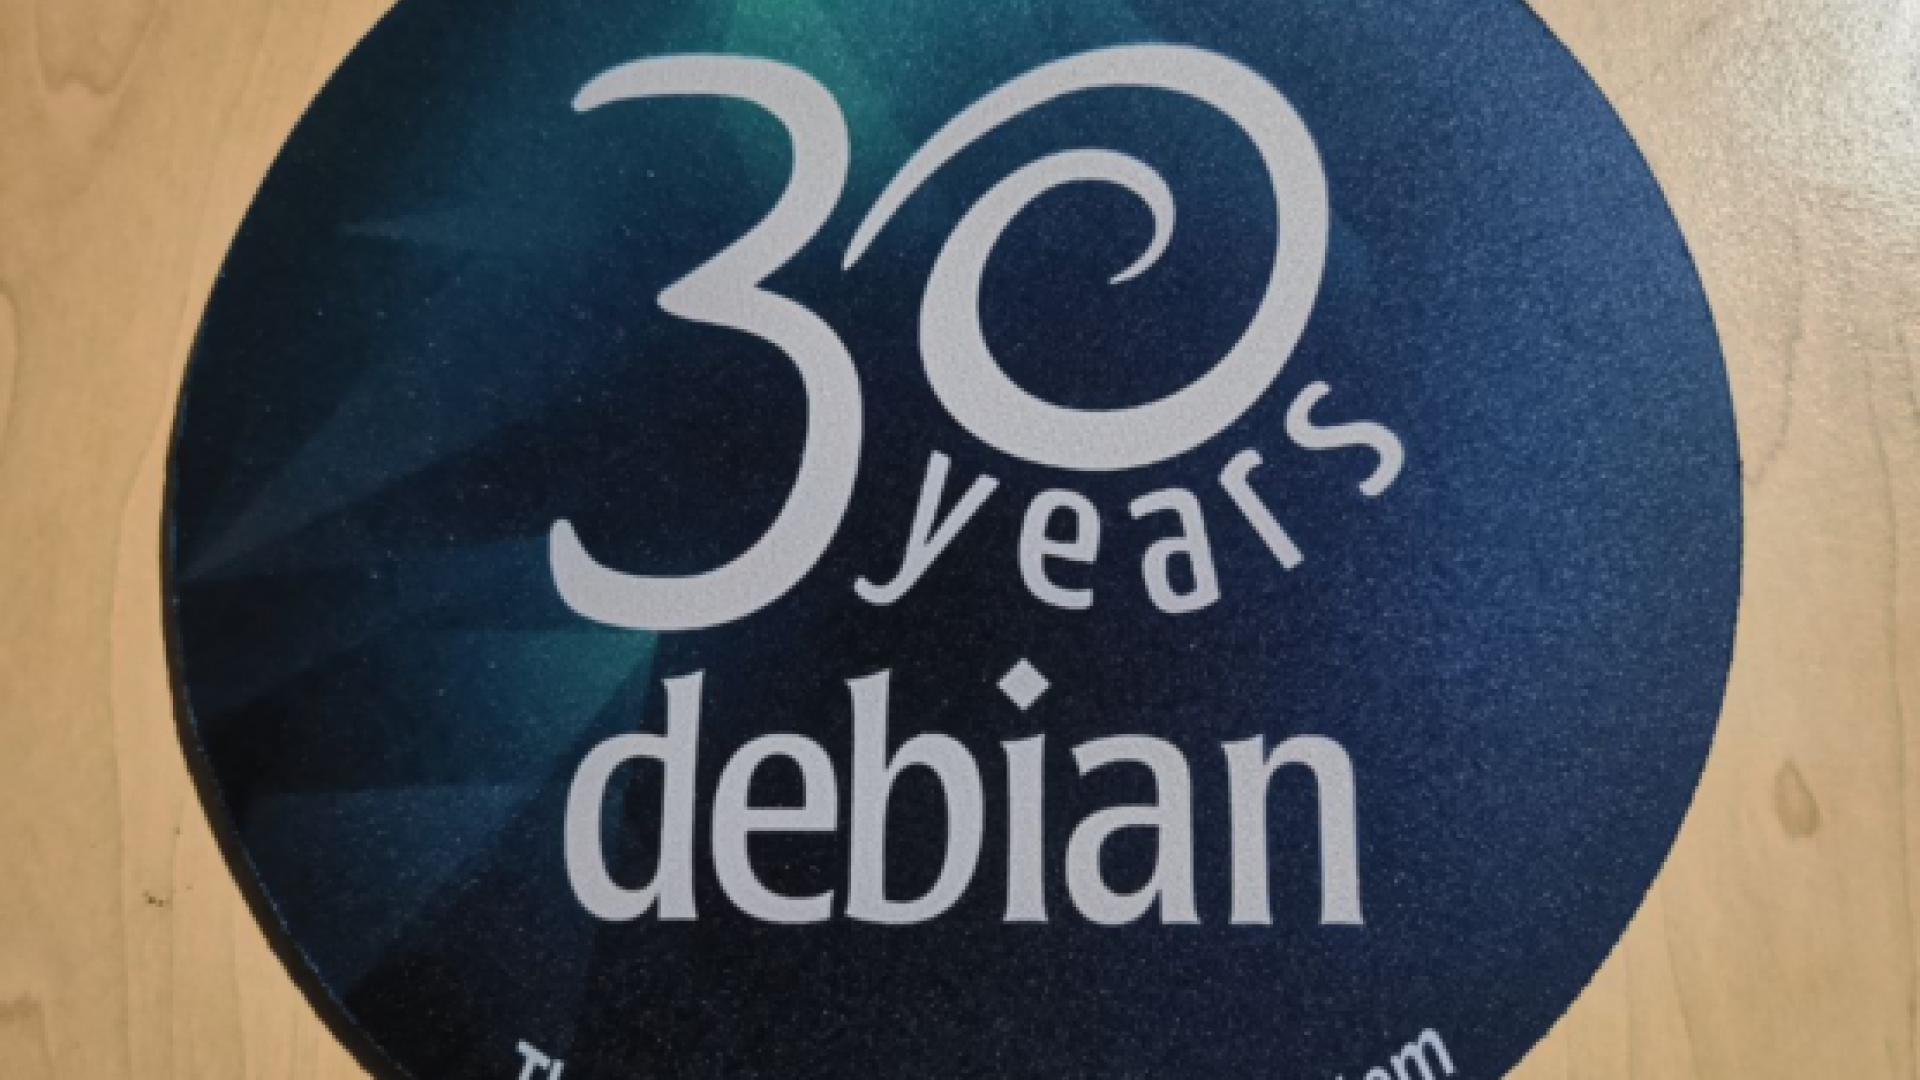 30 years of Debian